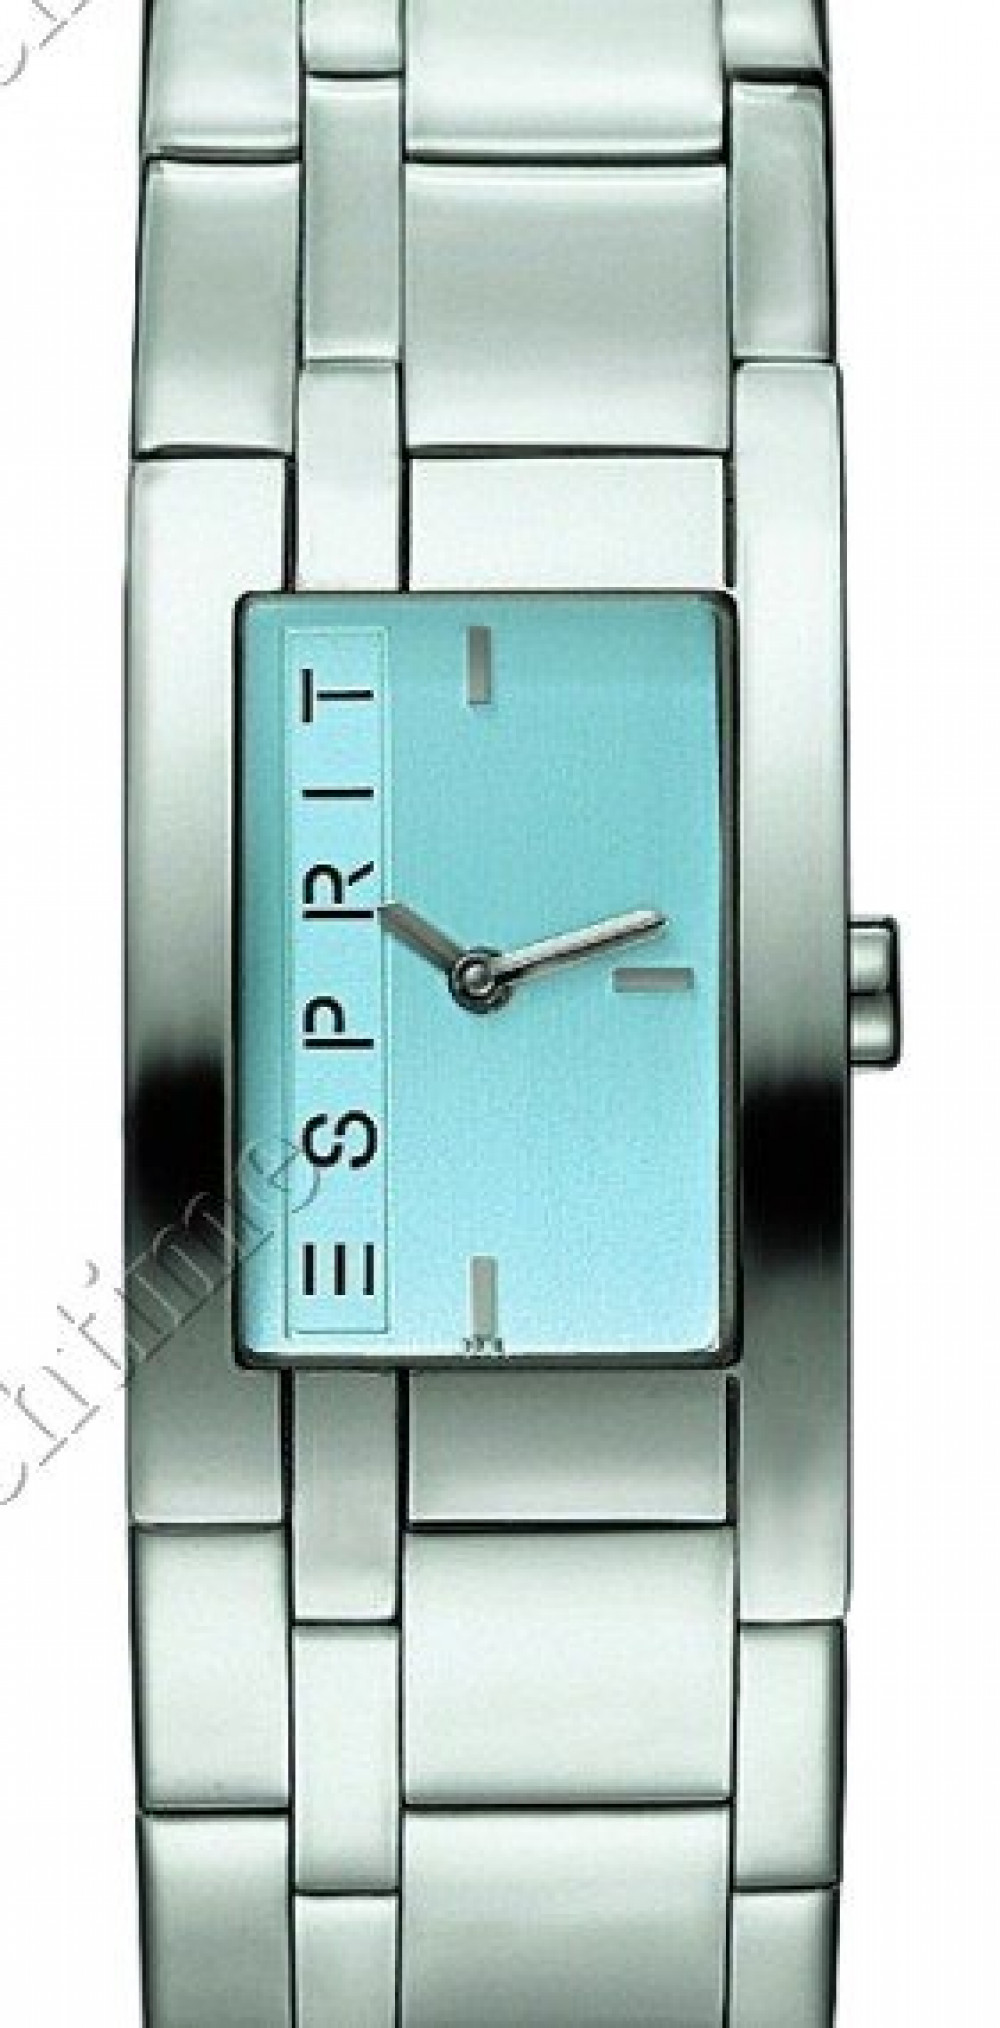 Zegarek firmy Esprit timewear, model LA blue